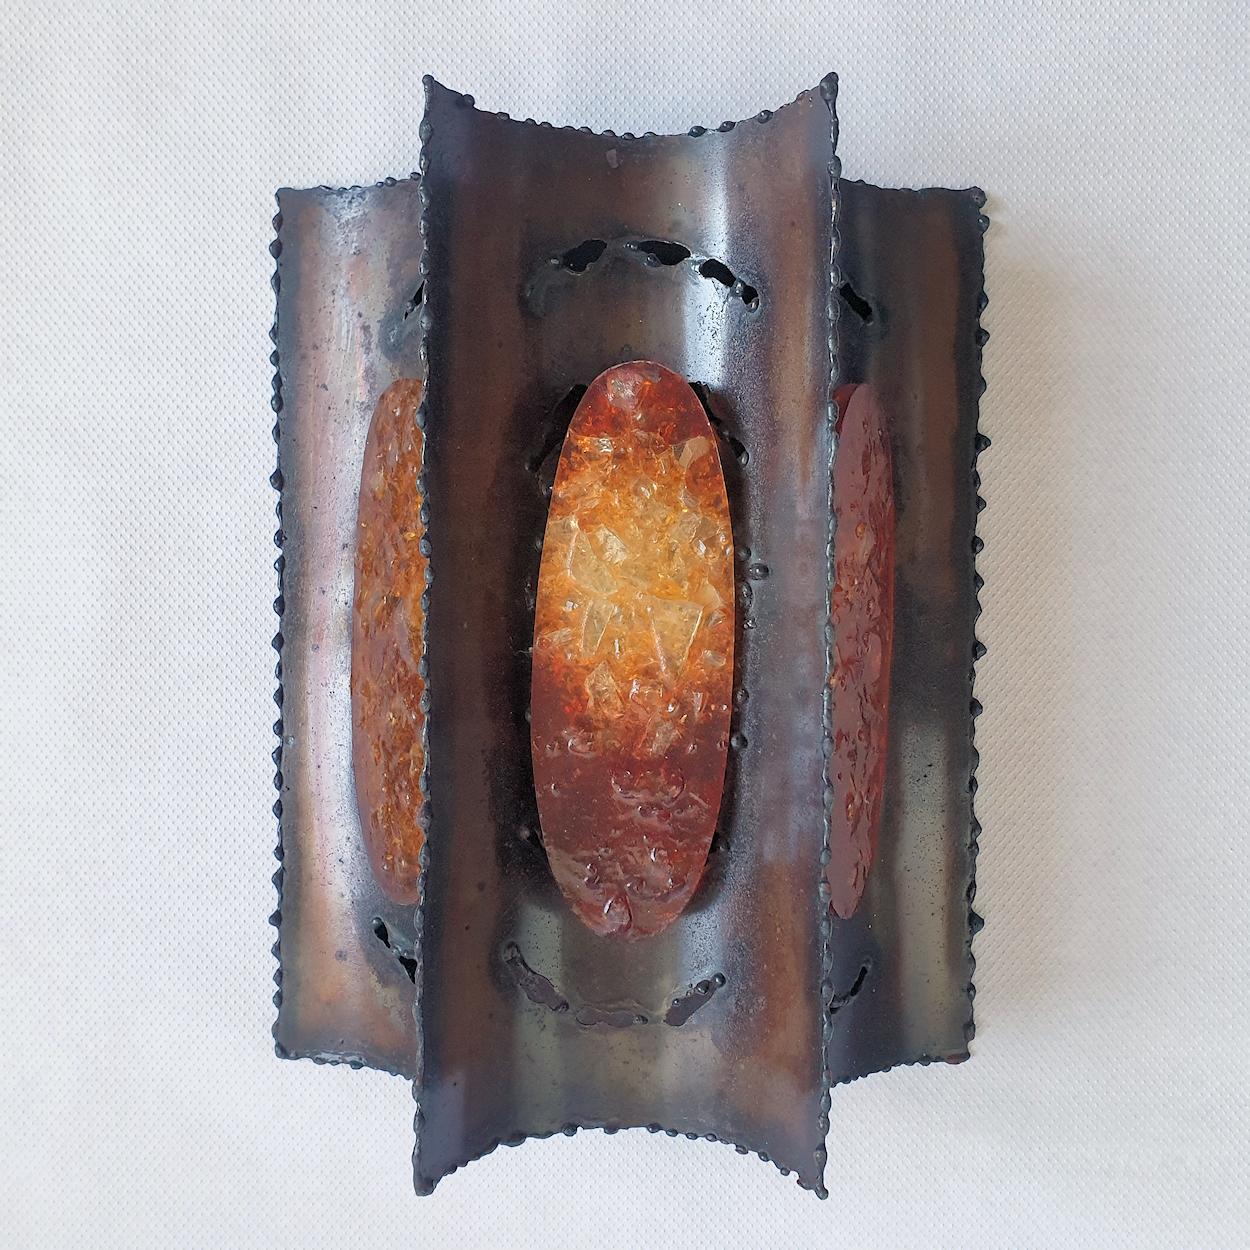 Paire d'appliques vintage en laiton traité à l'acide, style Brutaliste, France années 1960.
Les appliques Mid Century Modern sont composées de 3 éléments en lucite ambrée qui, une fois allumés, éclairent l'applique d'une lueur chaleureuse. Les